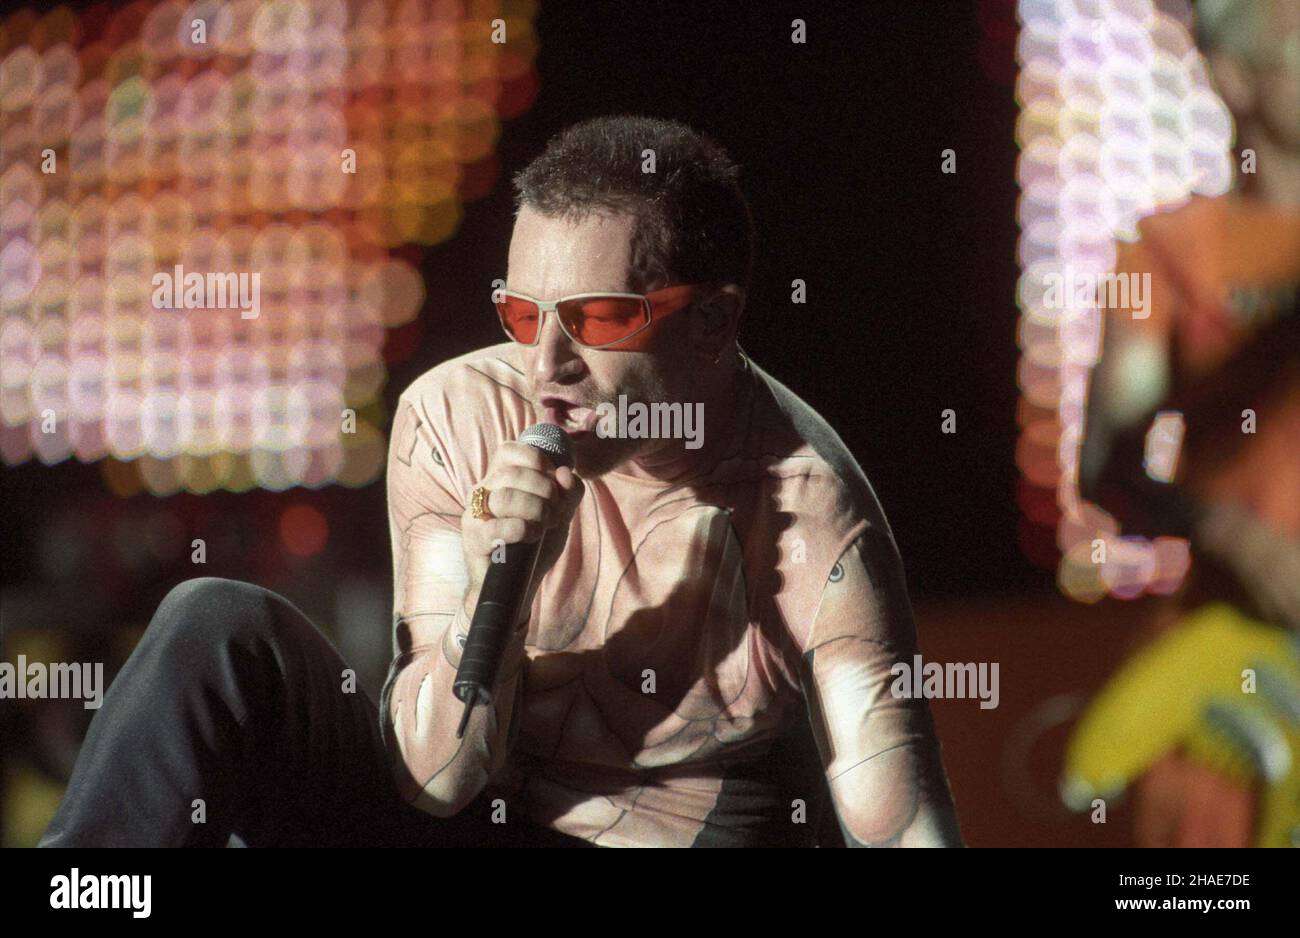 Warszawa 1997-08-12. Jedyny koncert w Polsce zespo³u U2. NZ: Wokalista zespo³u - Bono podczas wystêpu. soa PAP/CAF/Radek Pietruszka Foto Stock